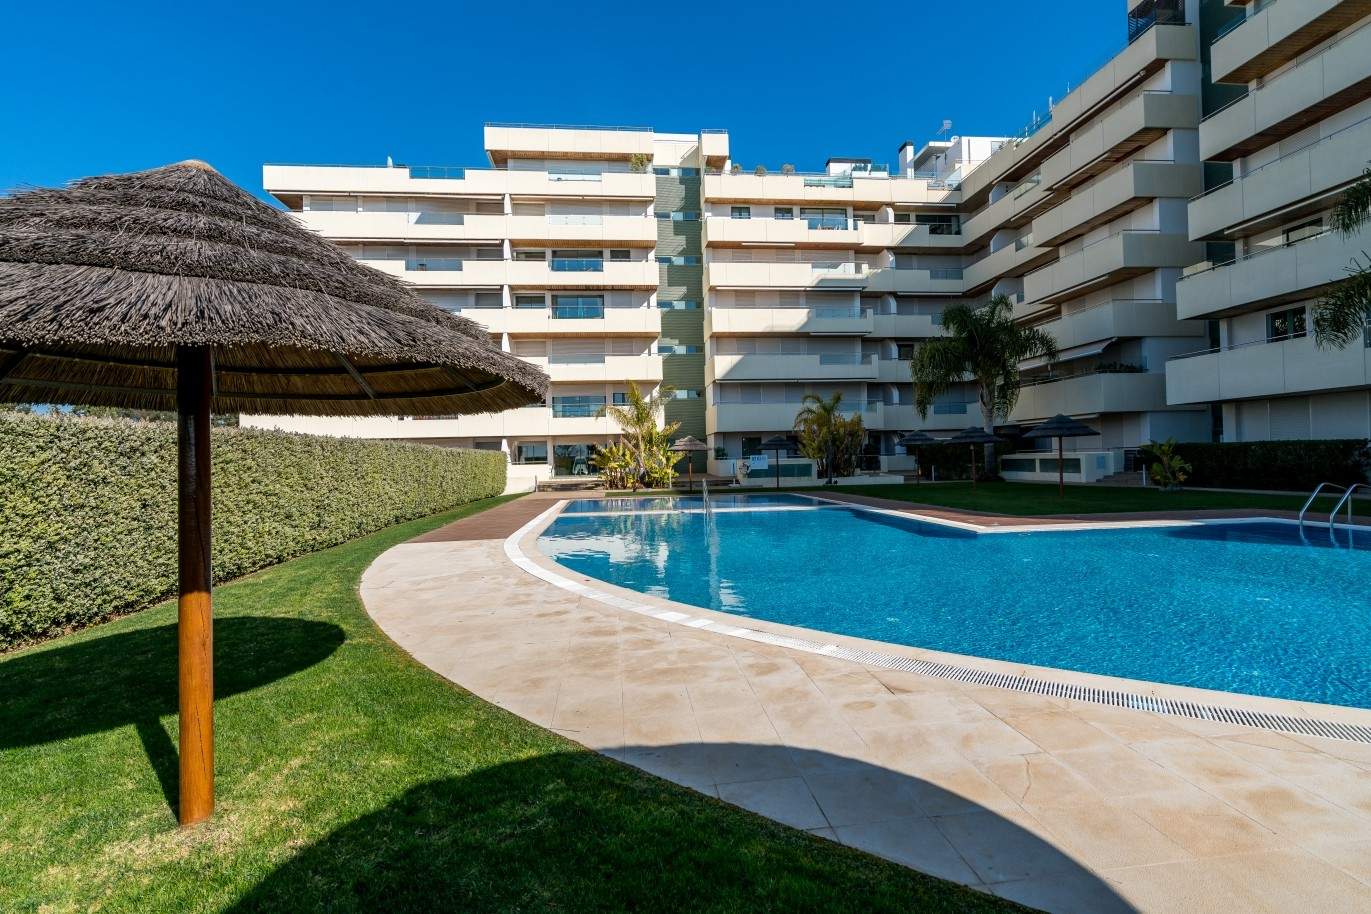 Venta de apartamento, cerca de la playa, Vilamoura, Algarve, Portugal_74093